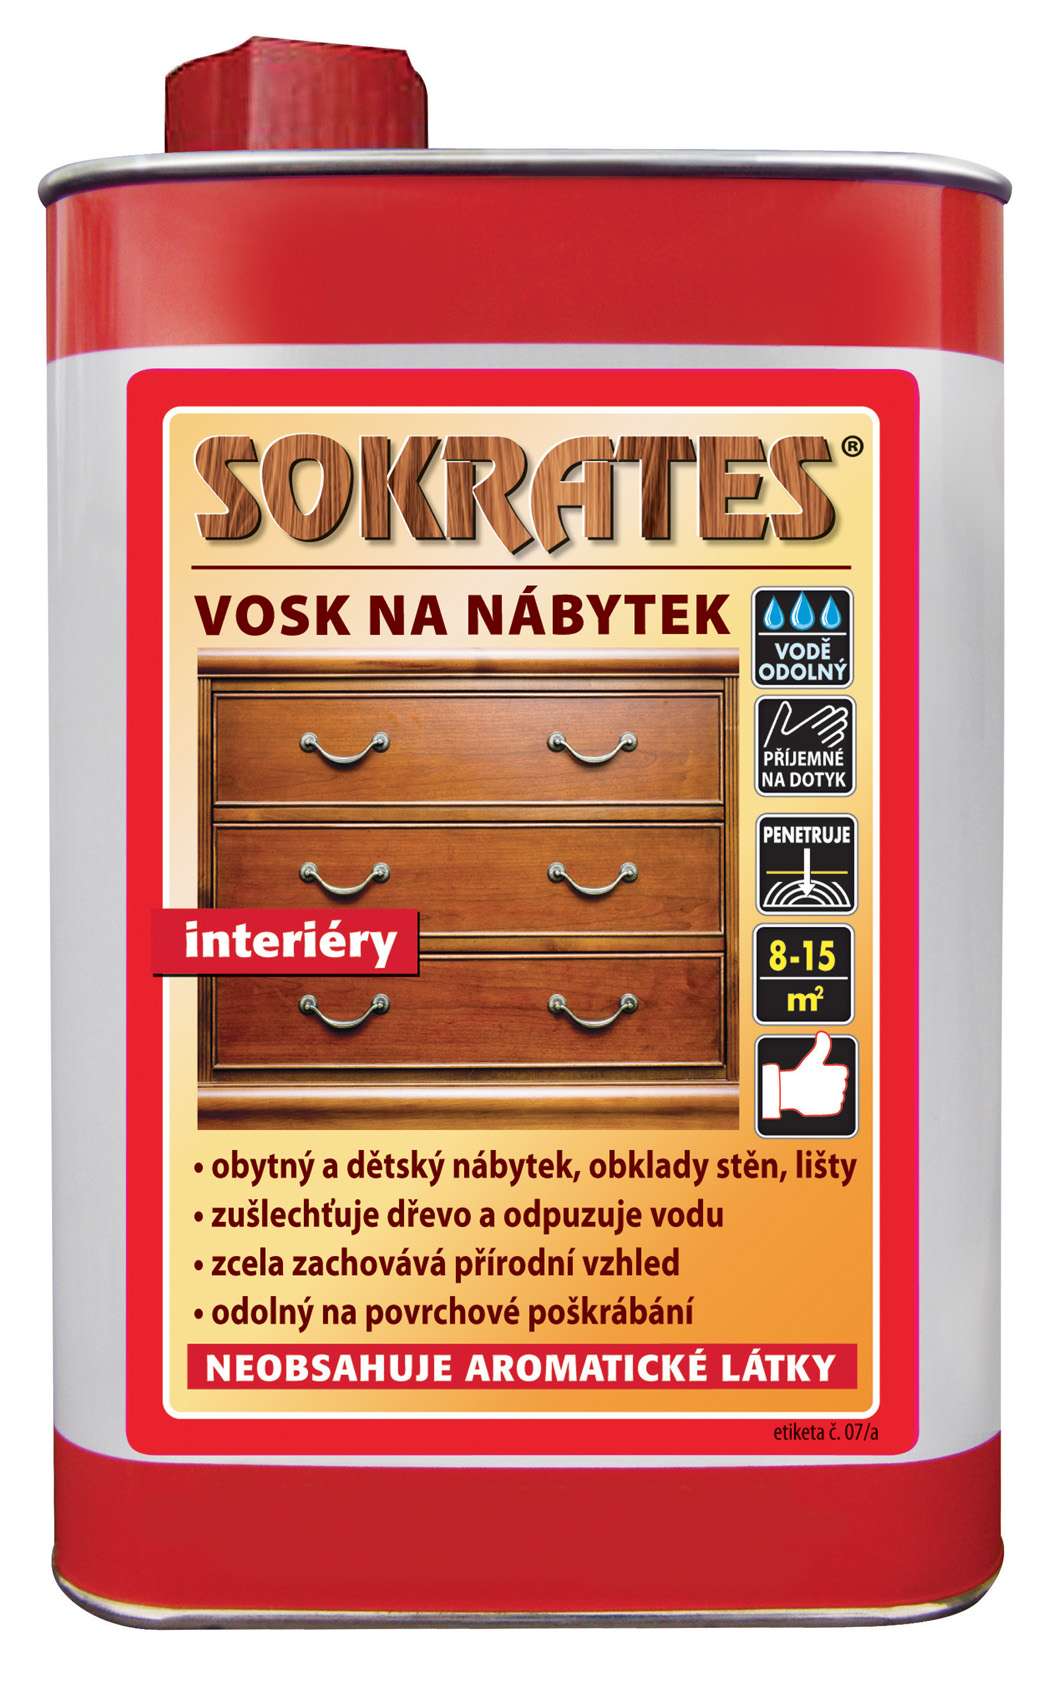 Sokrates Vosk na nábytek * Tekutý vosk na bázi organických rozpouštědel. 1